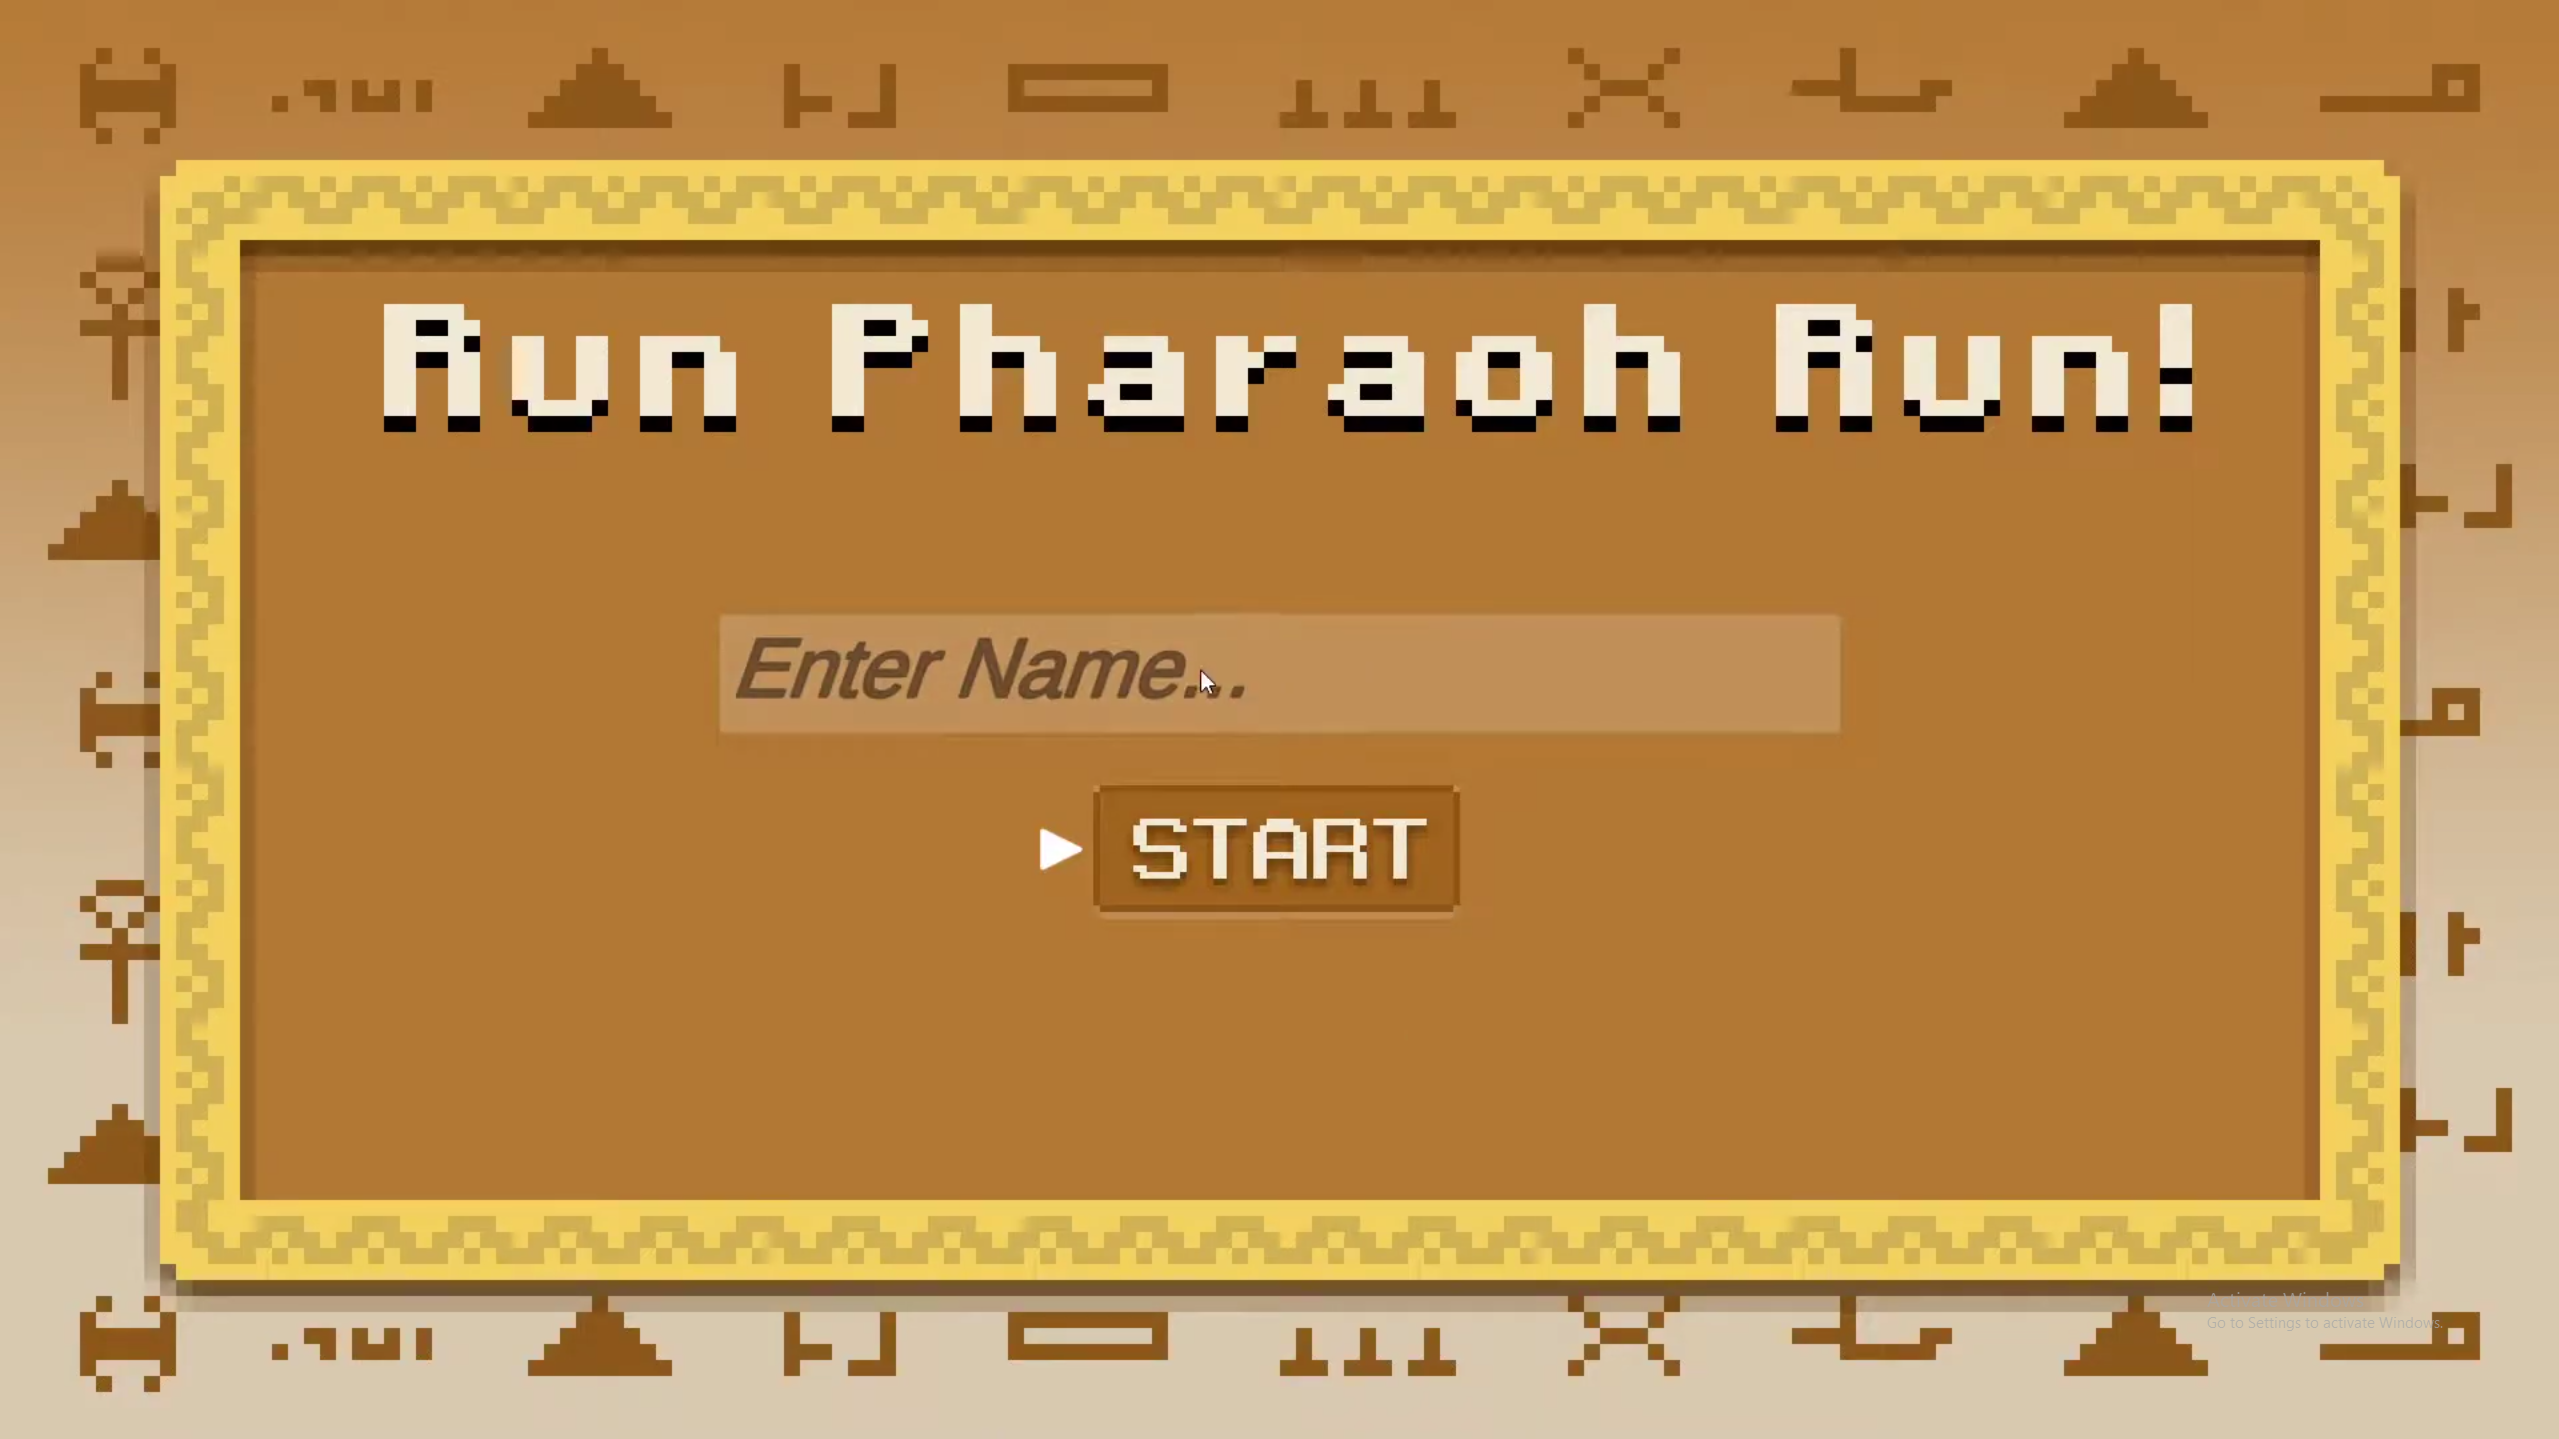 Run Pharaoh Run!